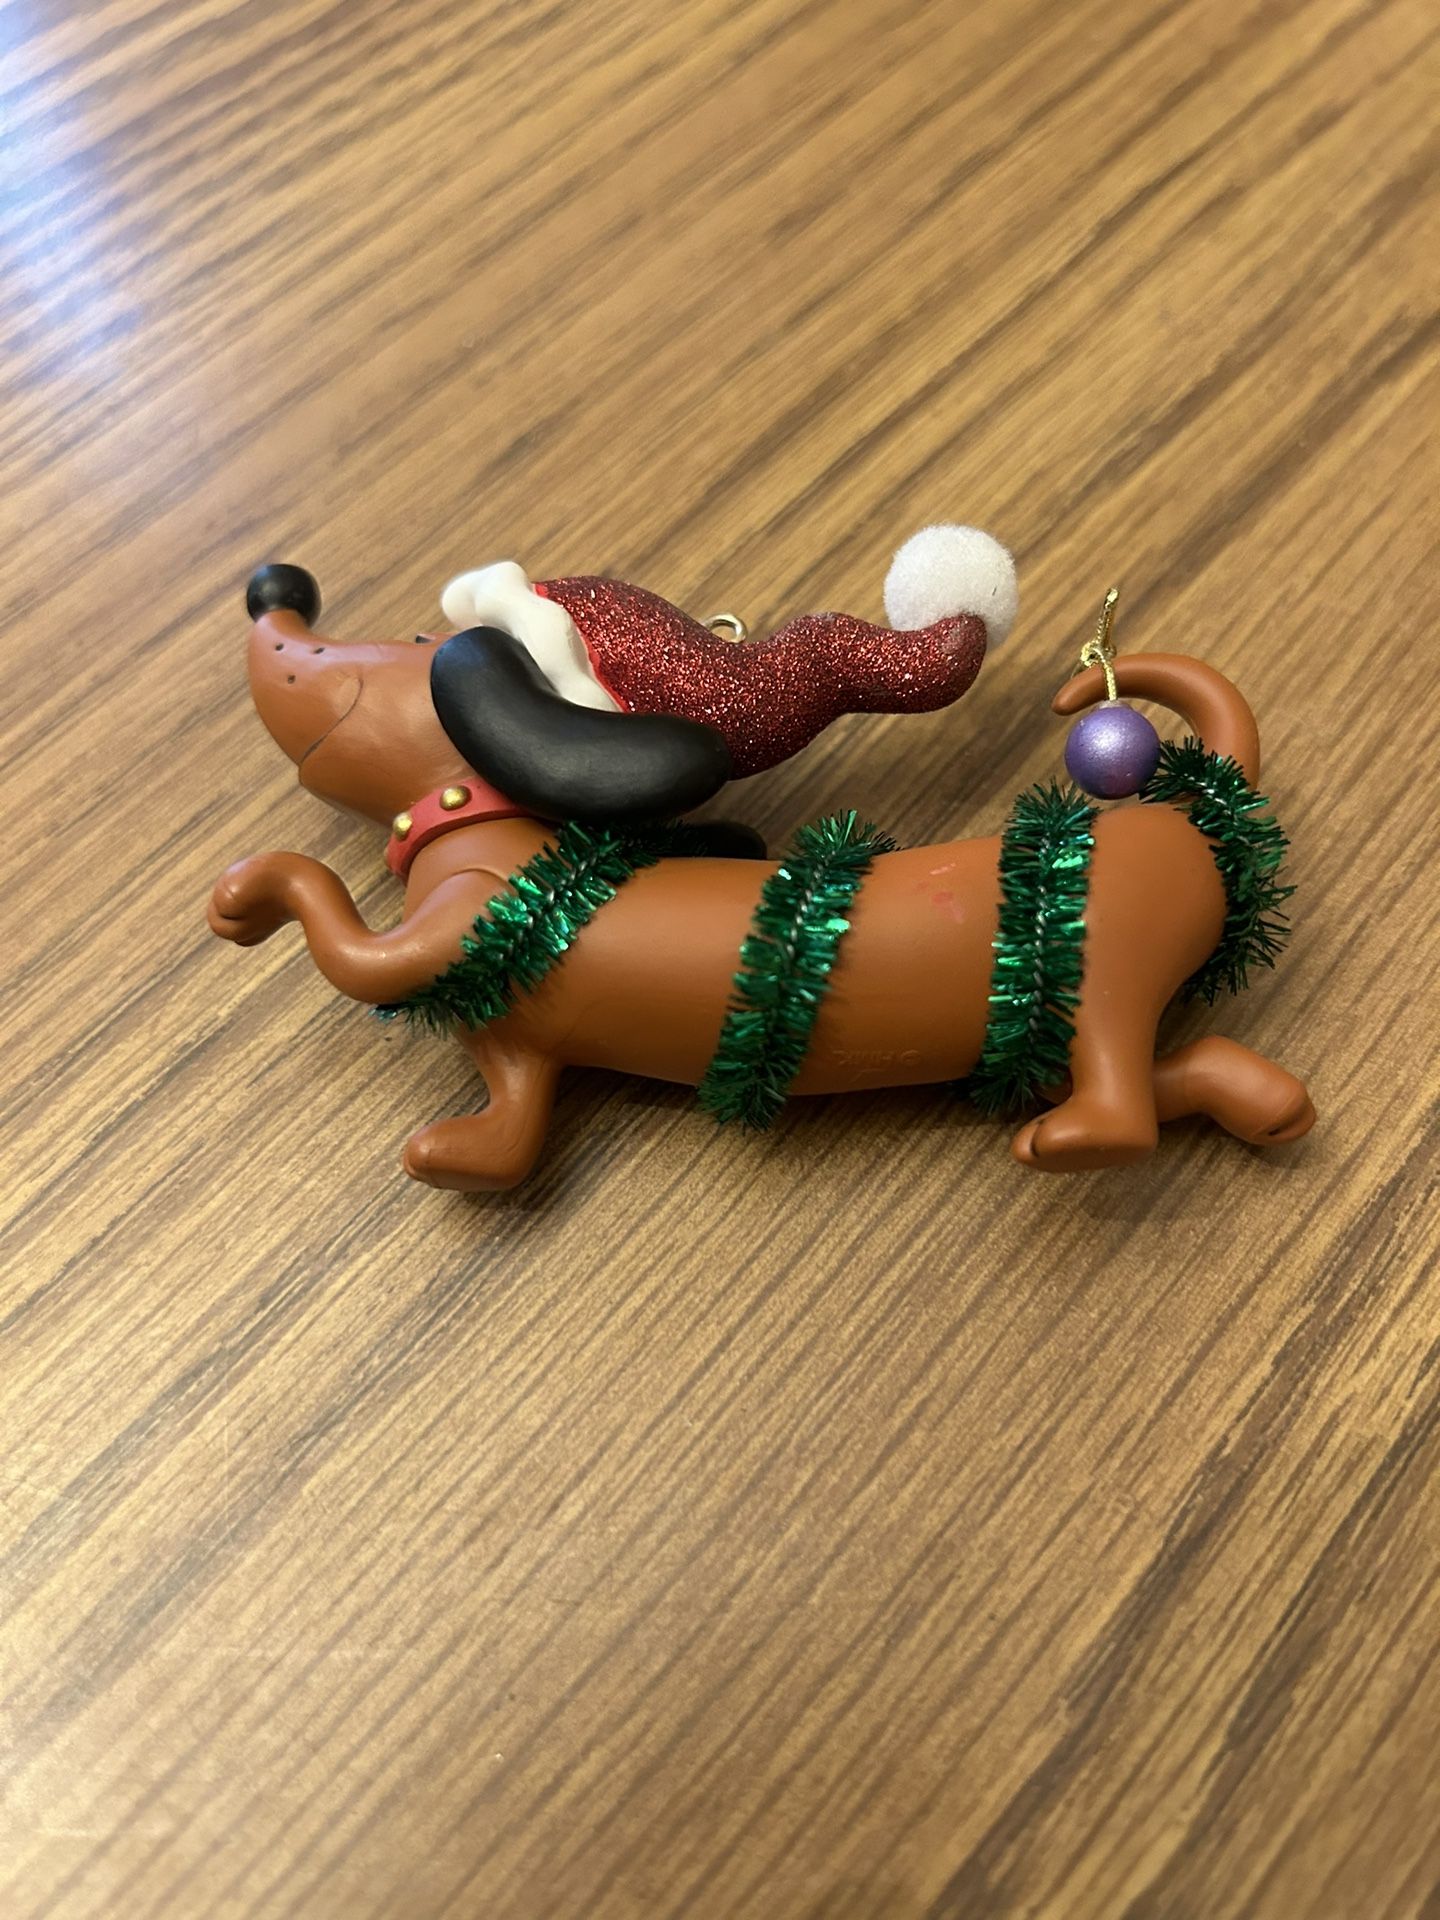 2016 Hallmark WIENER WONDERLAND Dachshund Dog Christmas Tree Ornament  As pictured - no box